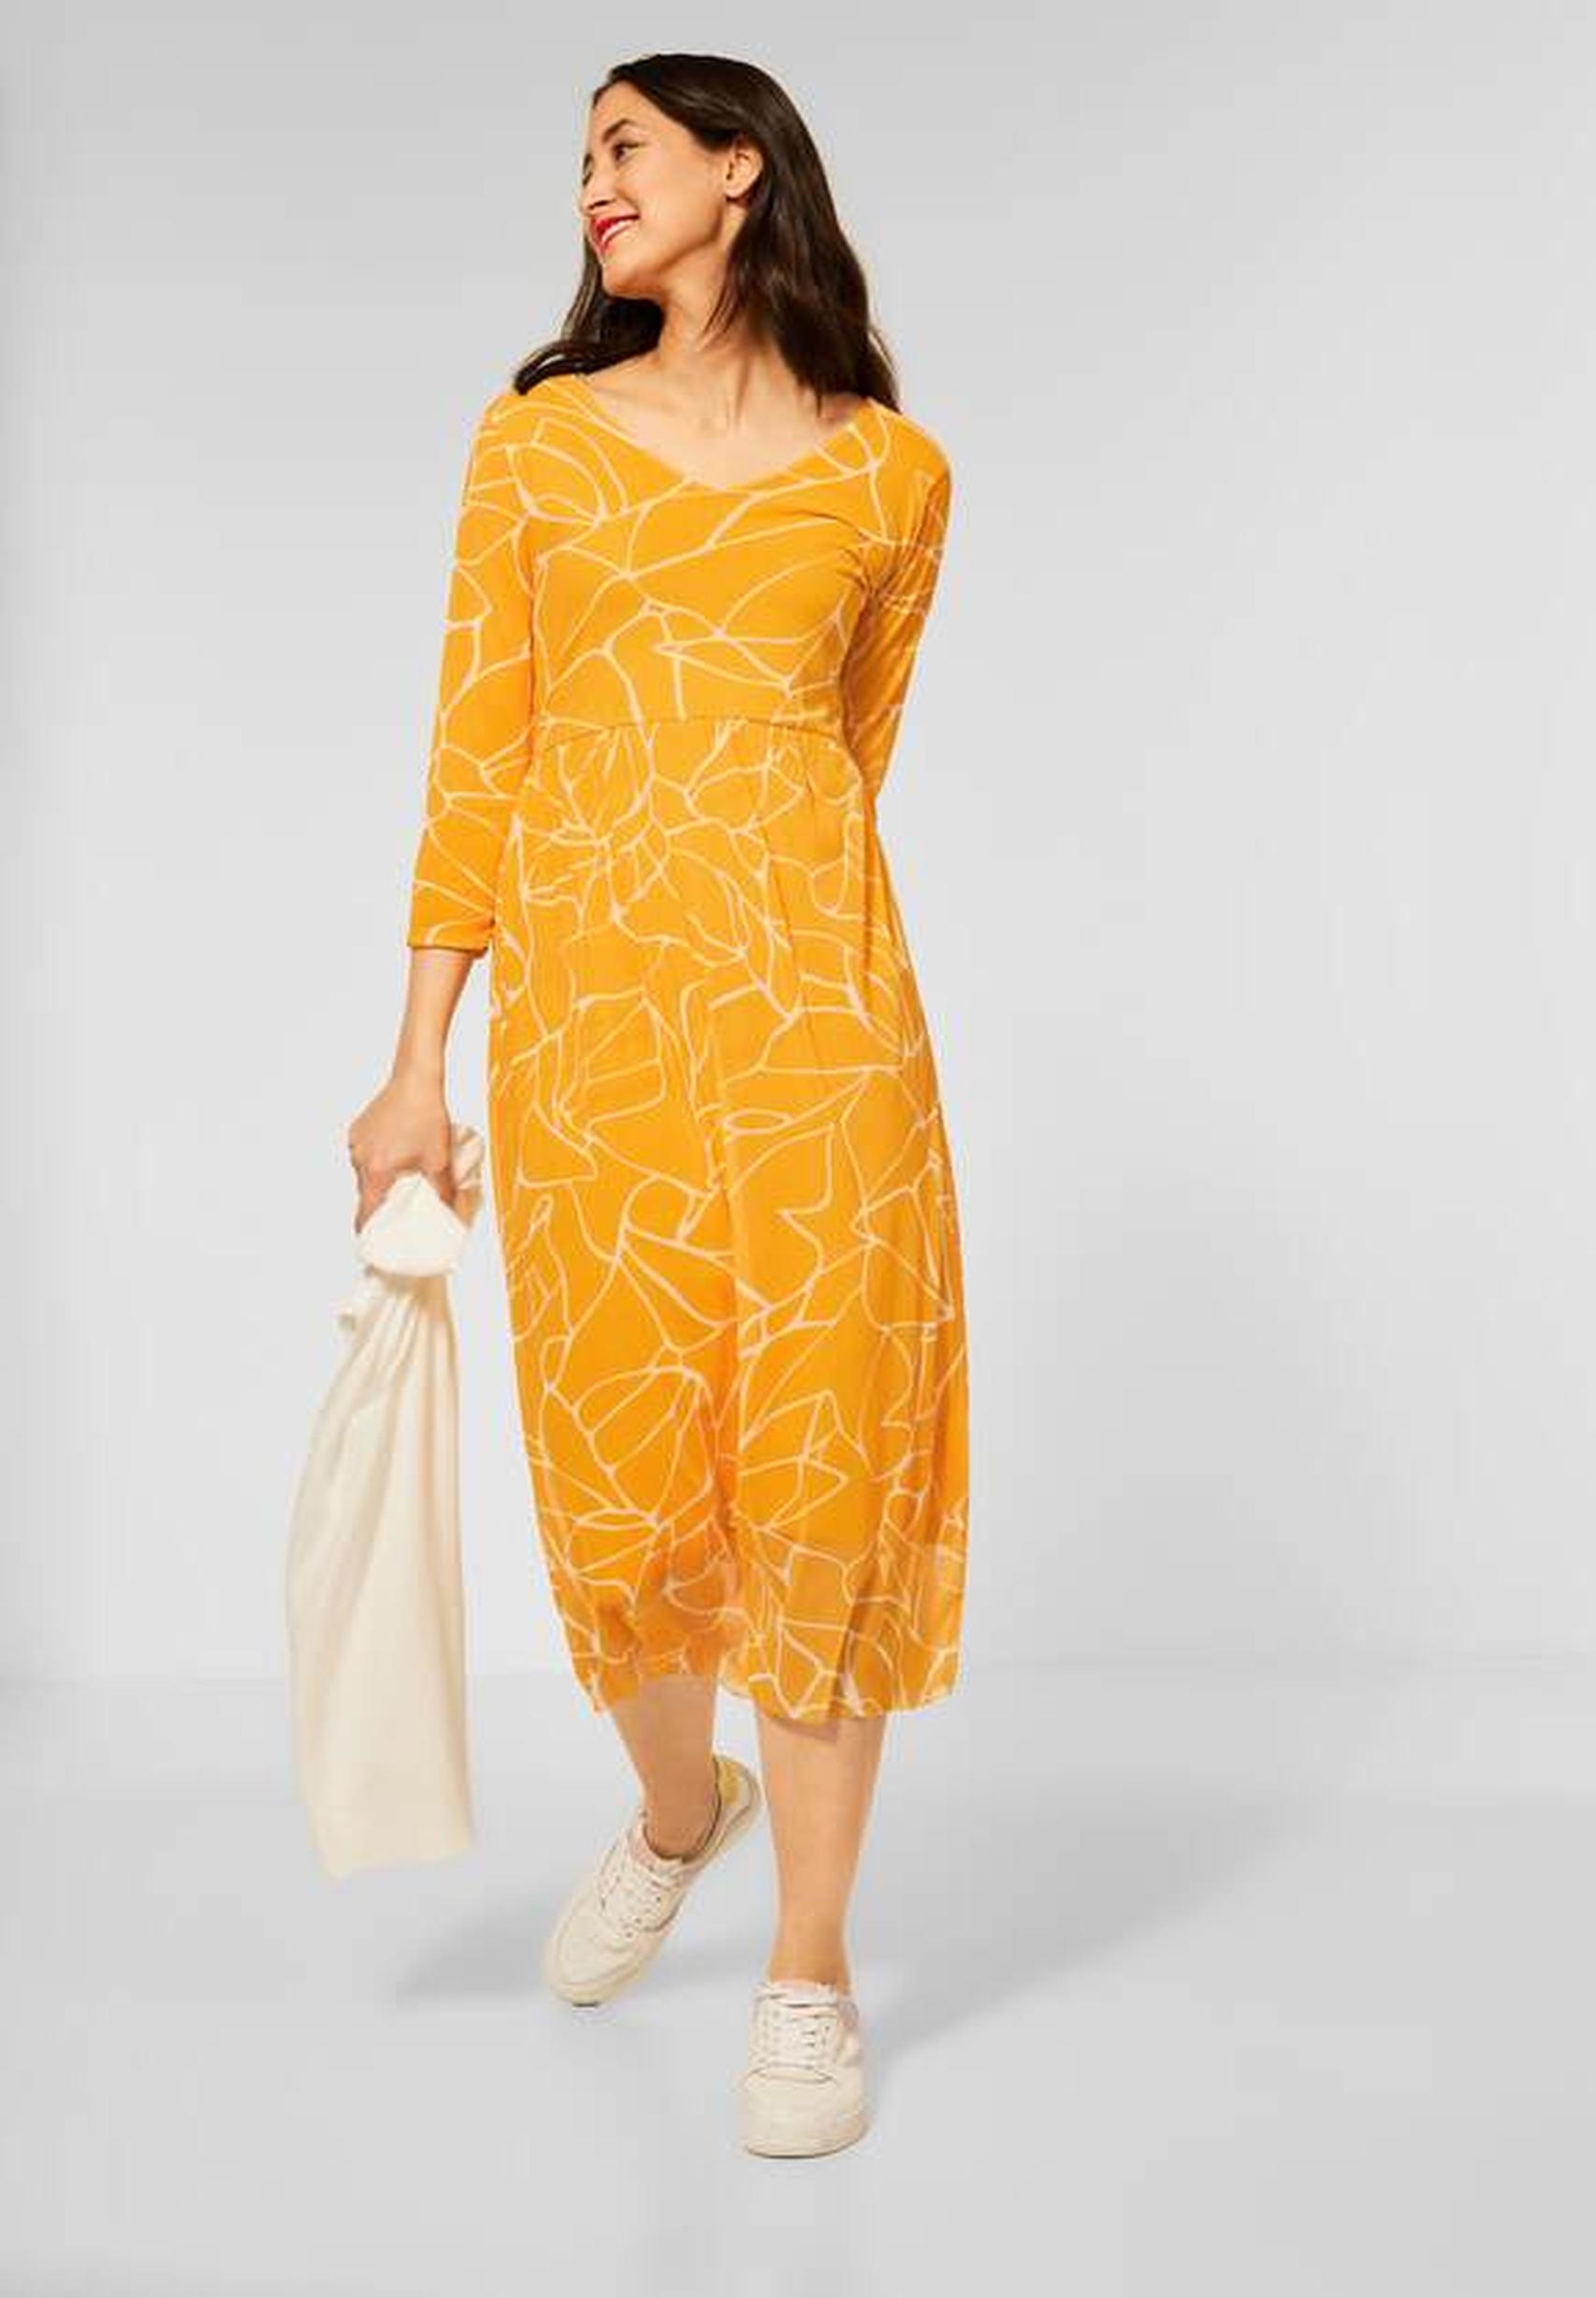 Feminines Midikleid aus der Kollektion von Street One in sunset yellow -  143173 | Sommerkleider